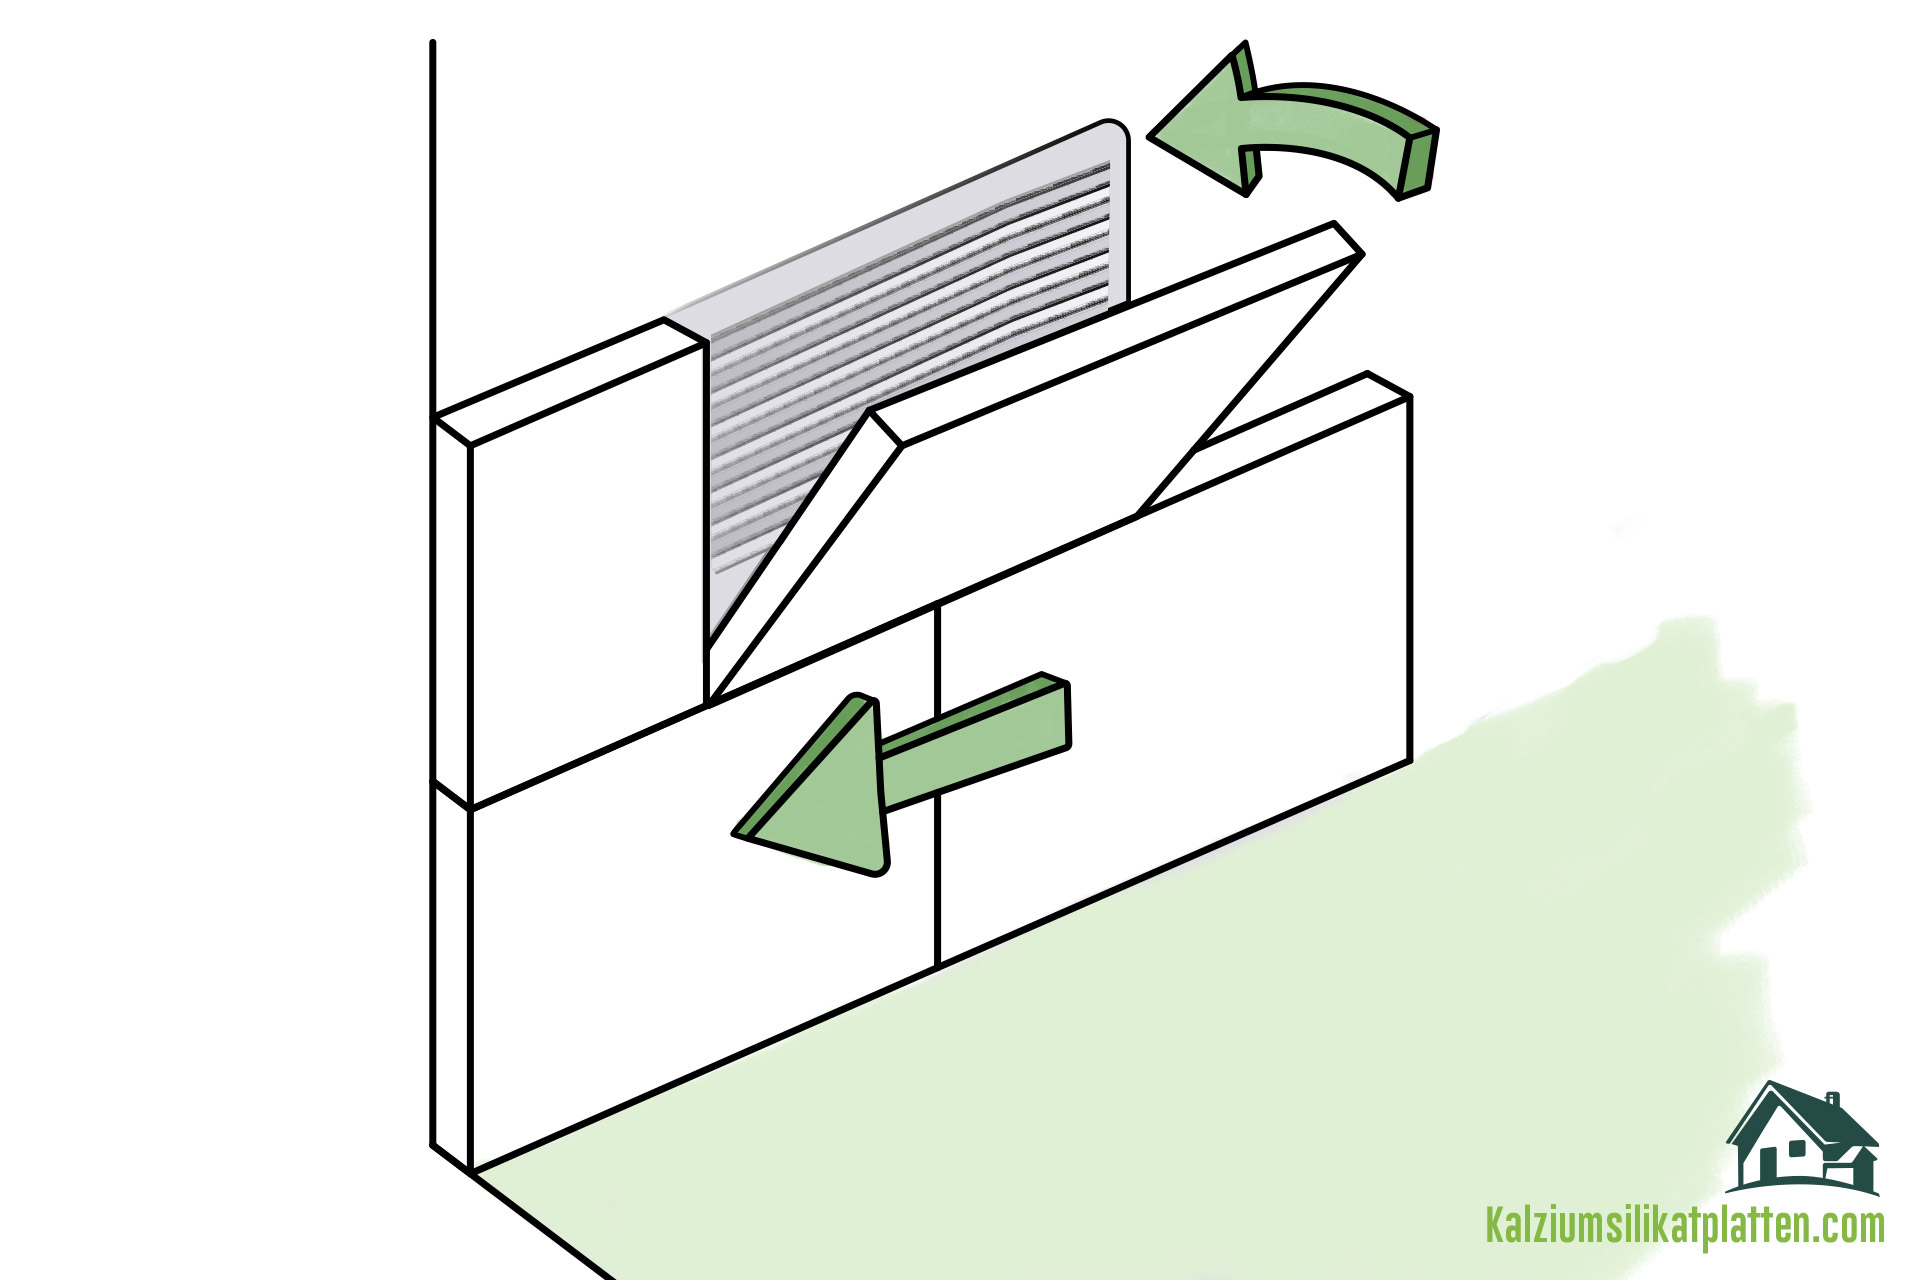 Anleitung zur Verarbeitung von Kalziumsilikatplatten: Anbringen der Kalziumsilikatplatte an die Wand